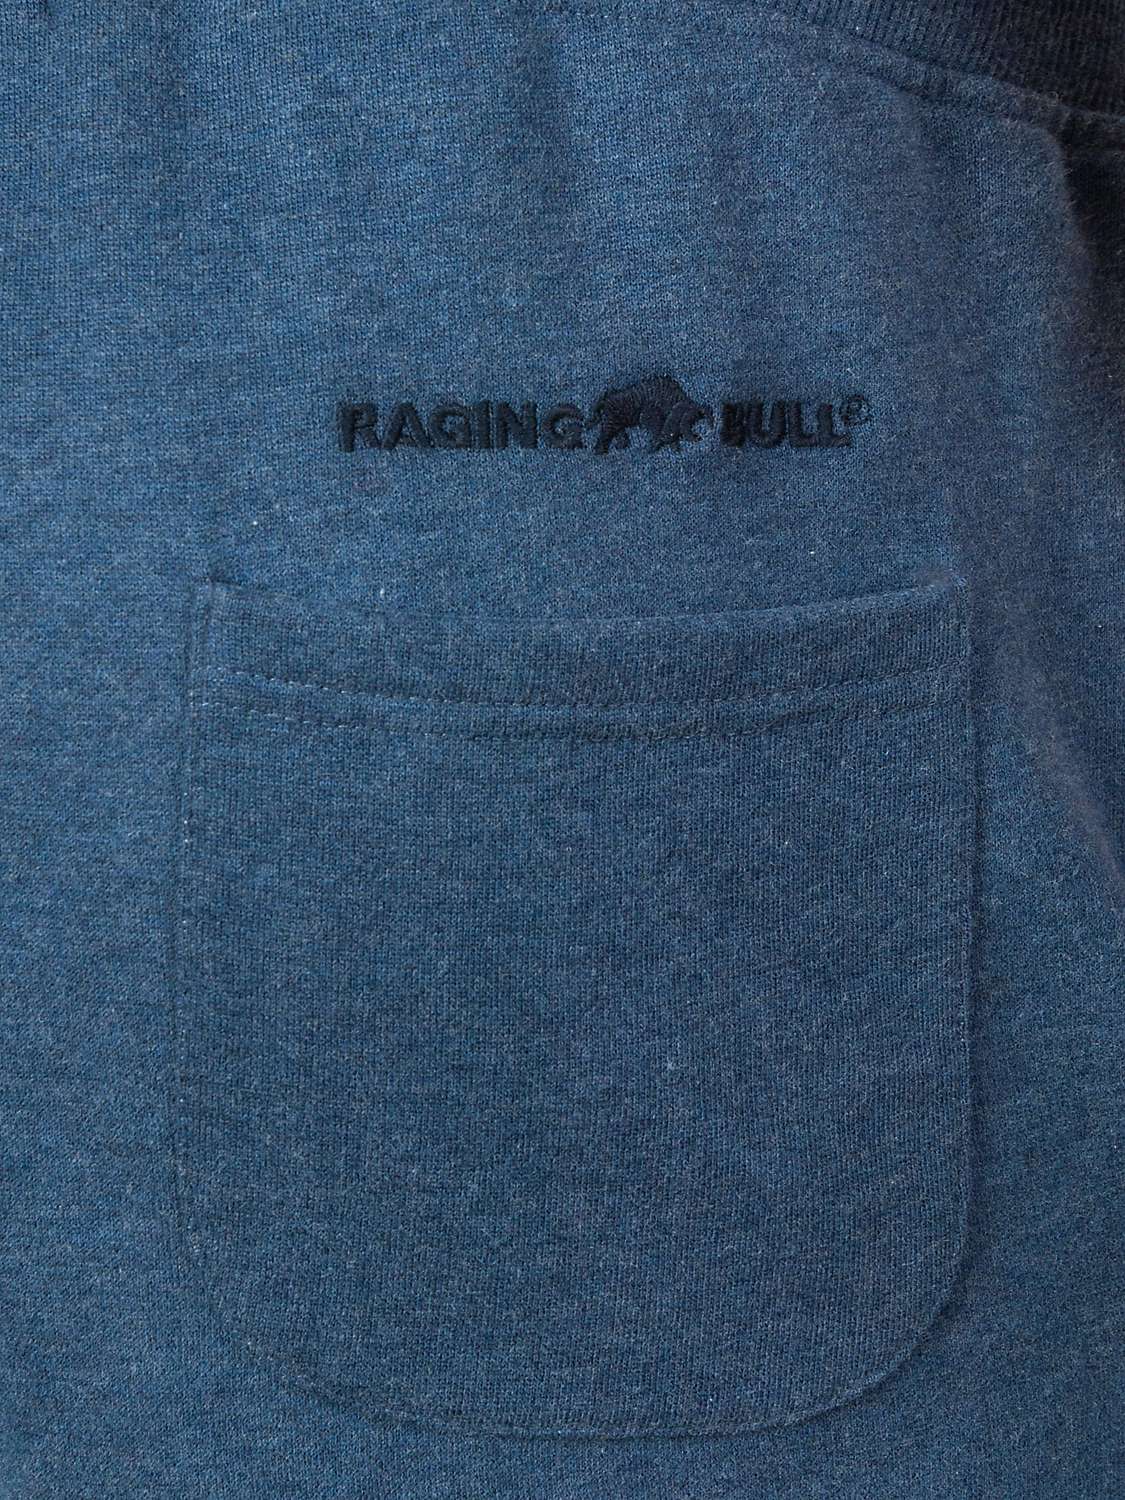 Buy Raging Bull Signature Sweatpants Online at johnlewis.com